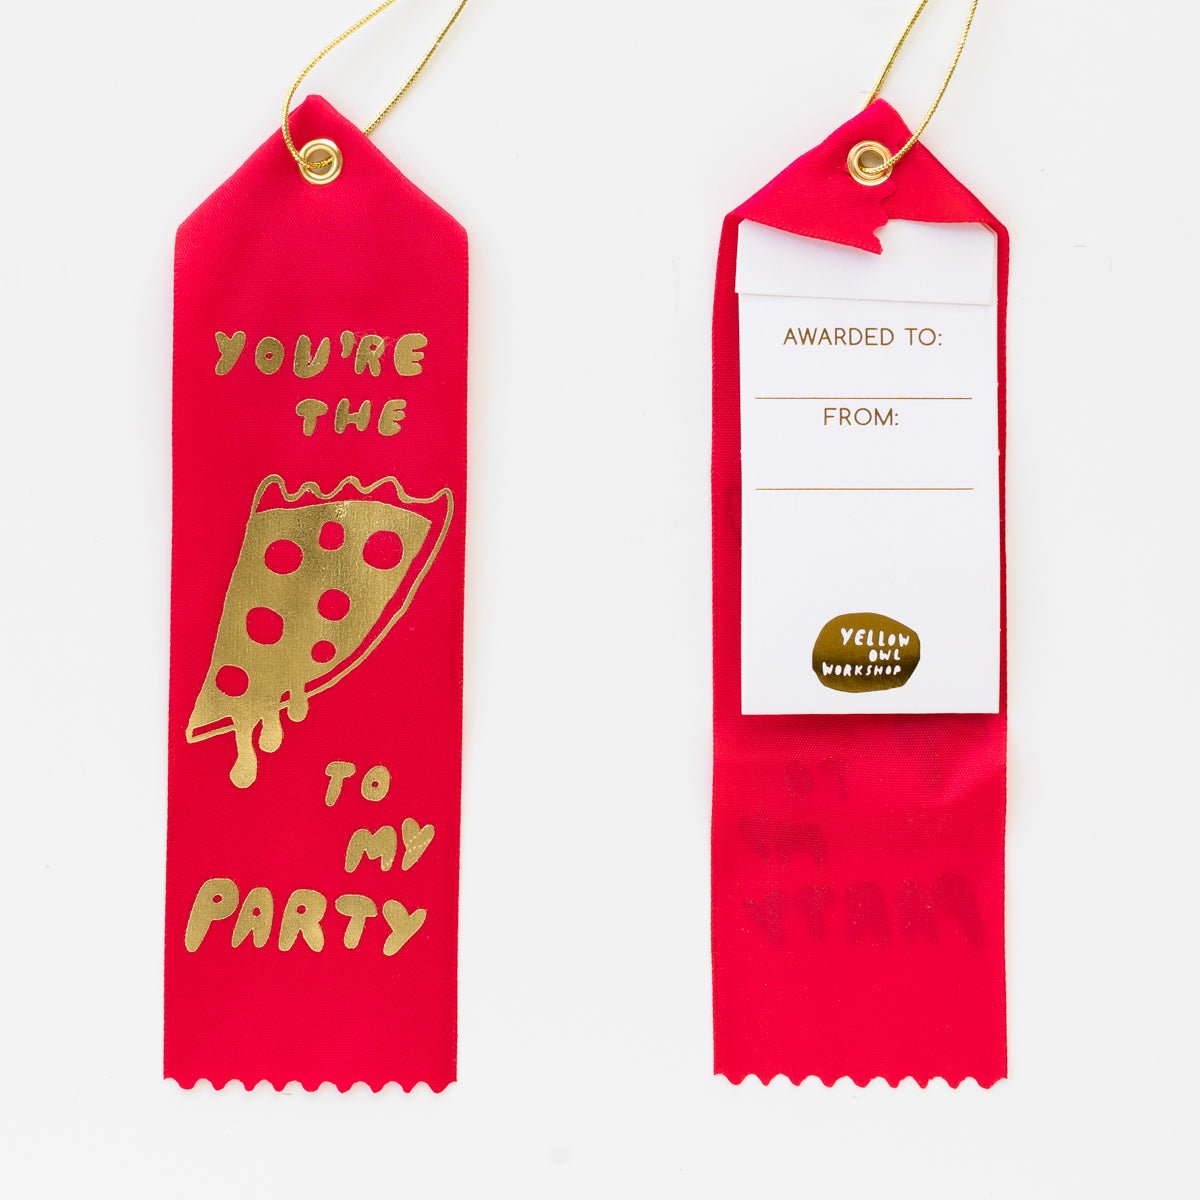 Pizza To My Party Award Ribbon